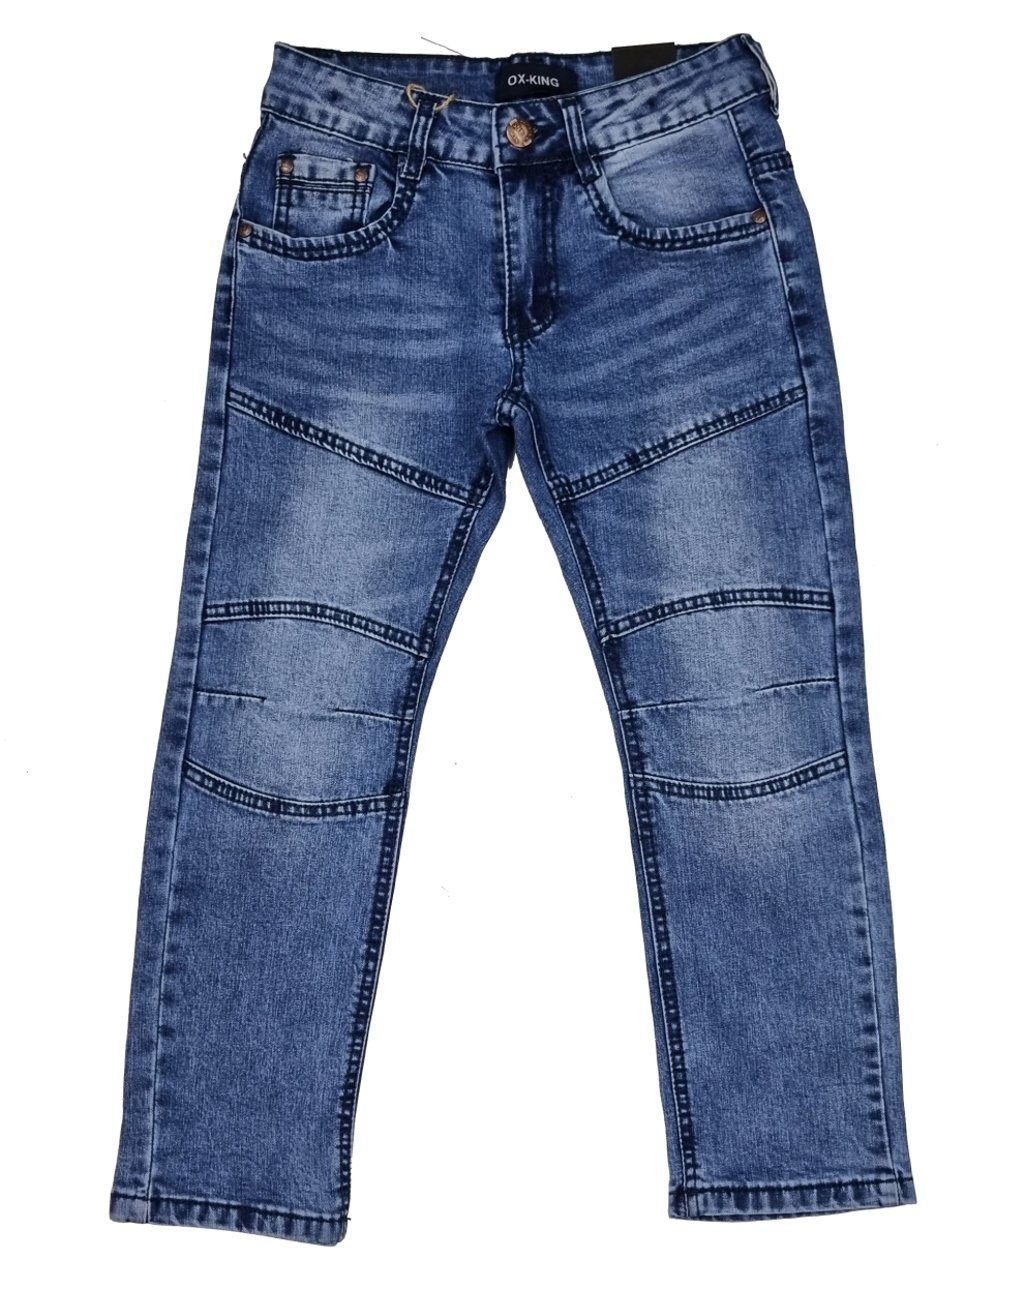 Boy Kinder J626 Jungen Fashion Jeans Jeans Hose Jeanshose, Kinderhose Bequeme